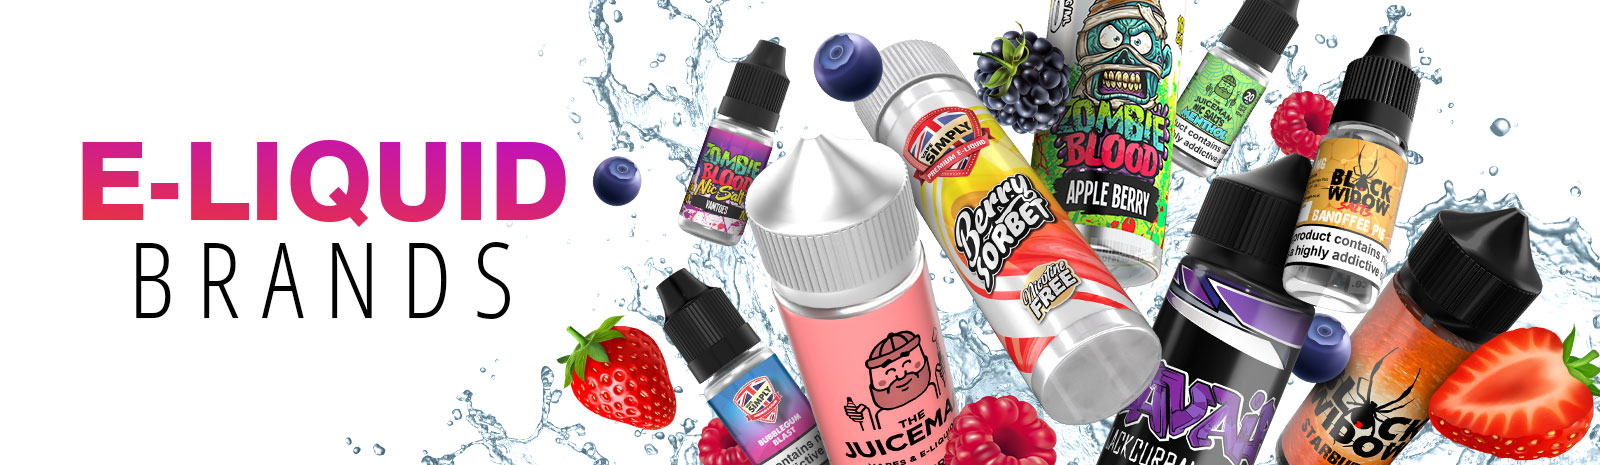 E-liquid Brands